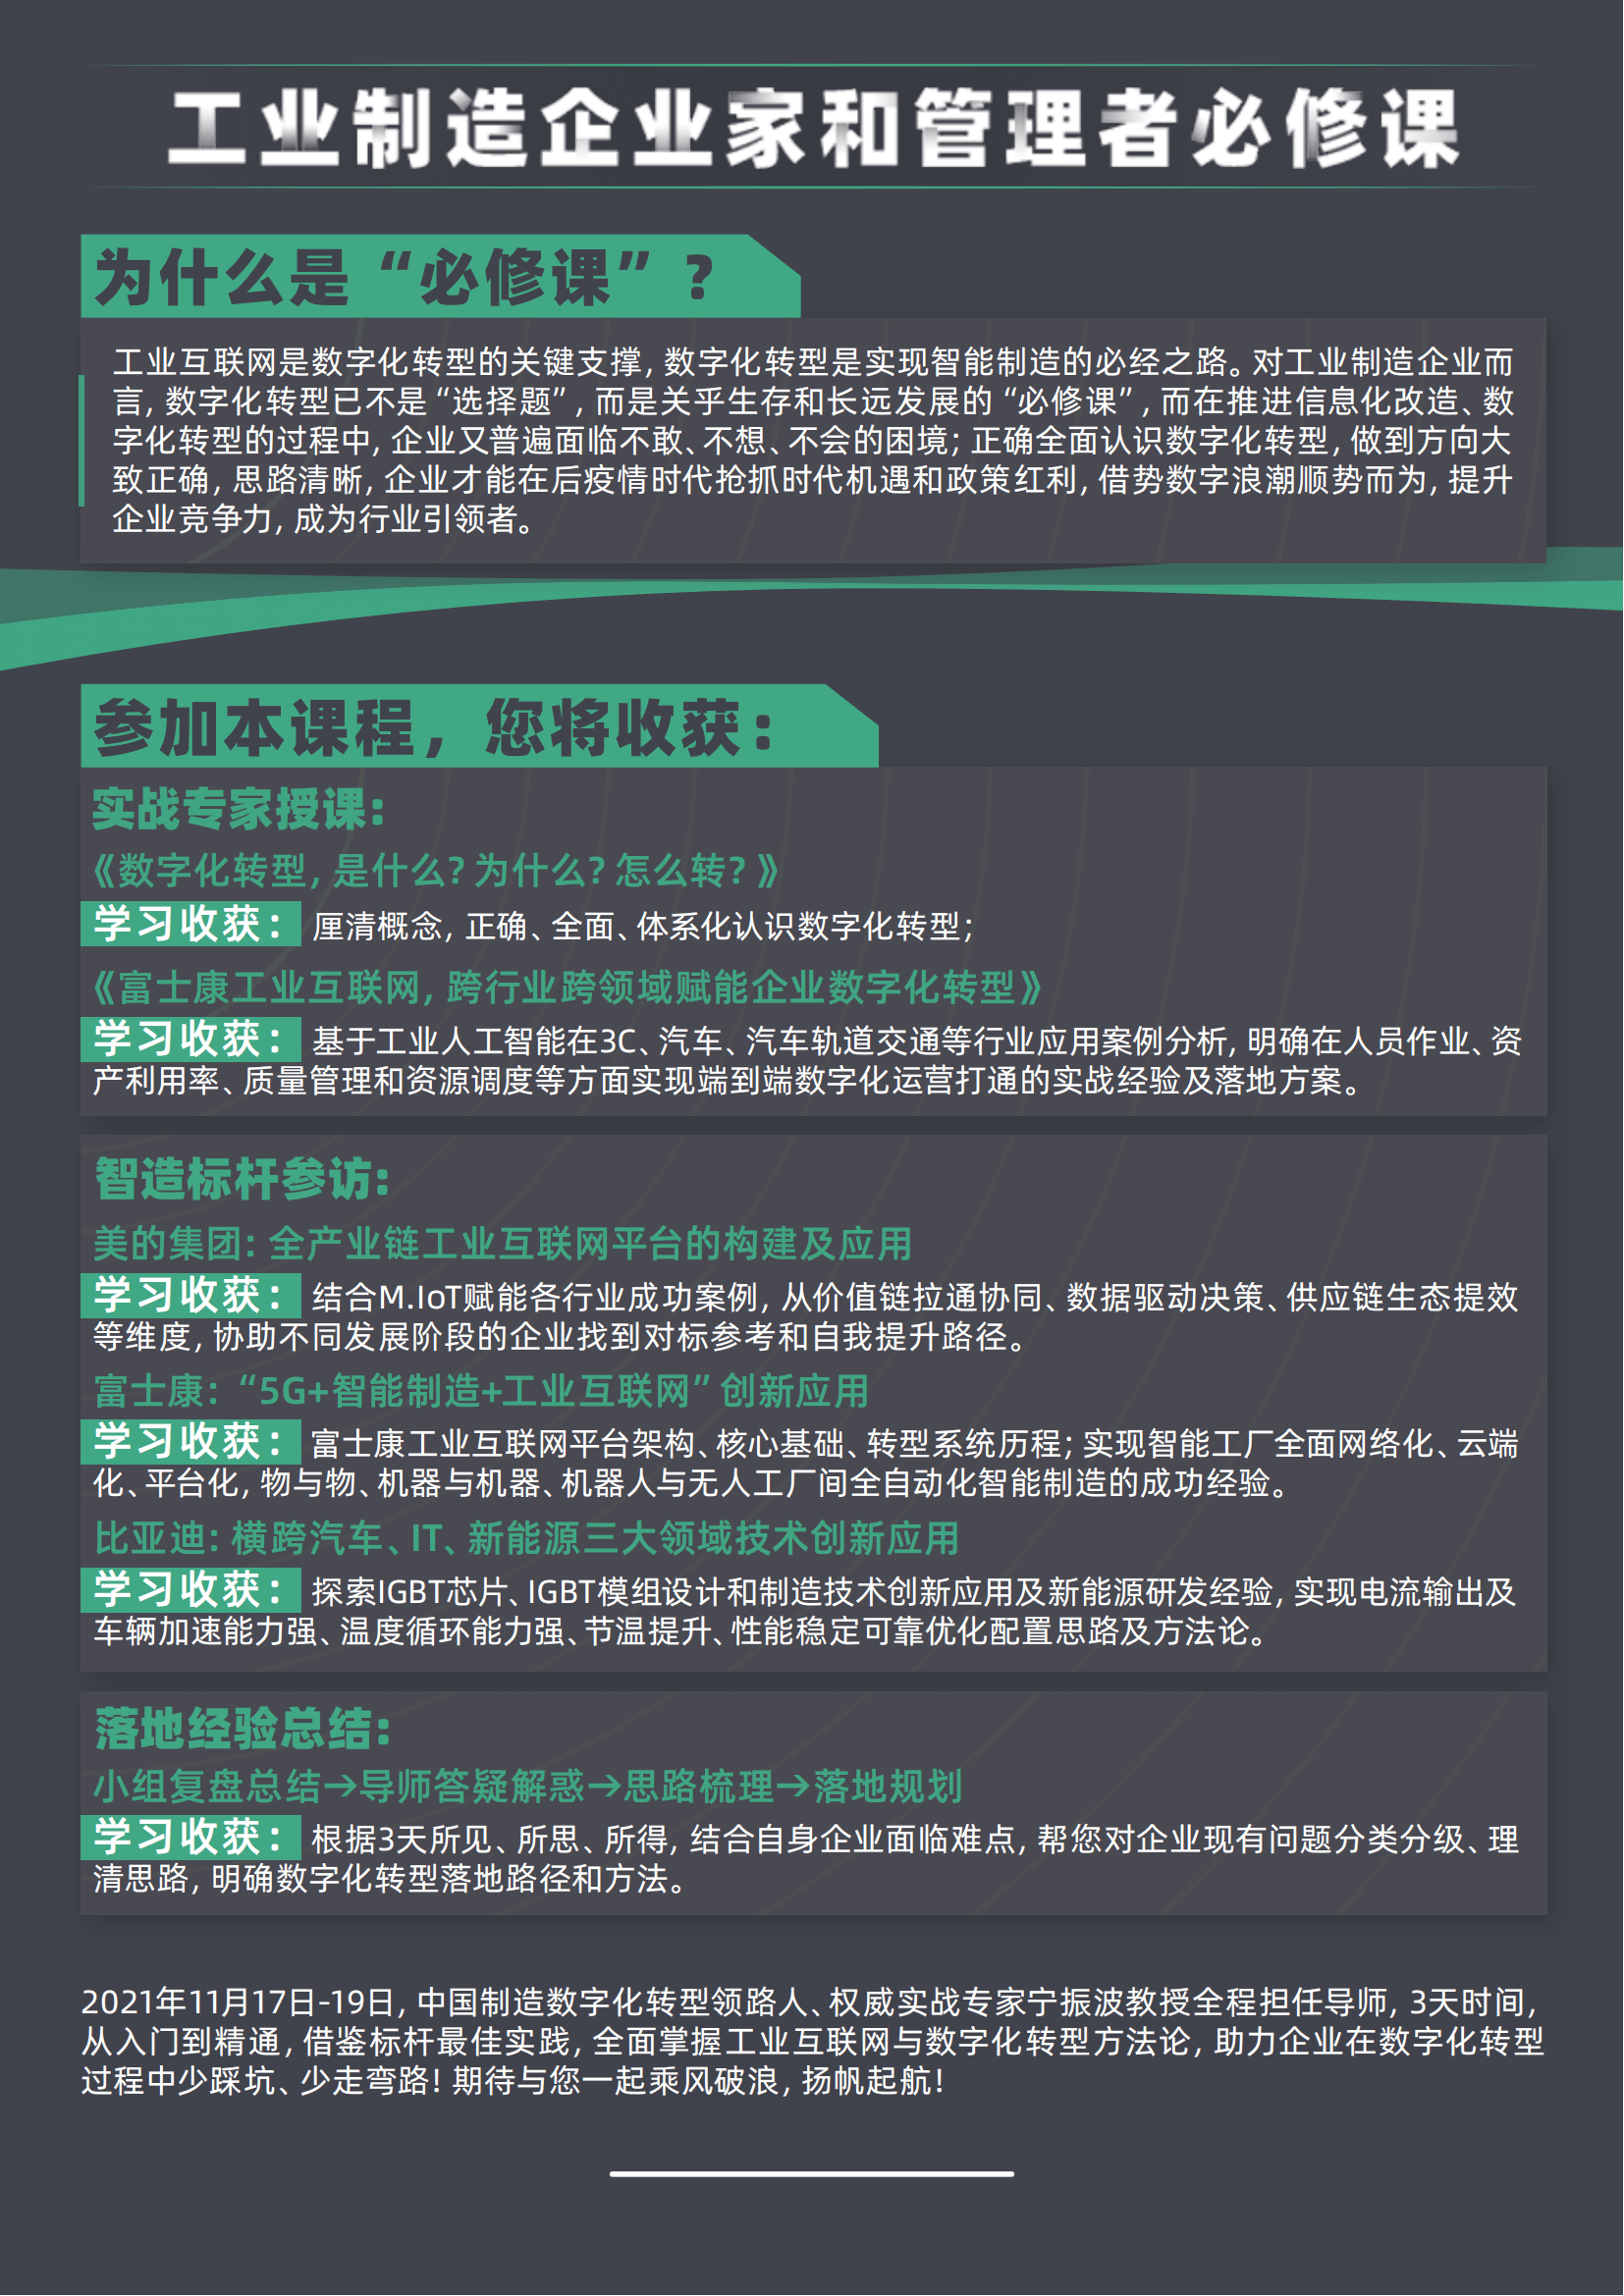 工业互联网与数字化转型研修班 第12期 11月广东